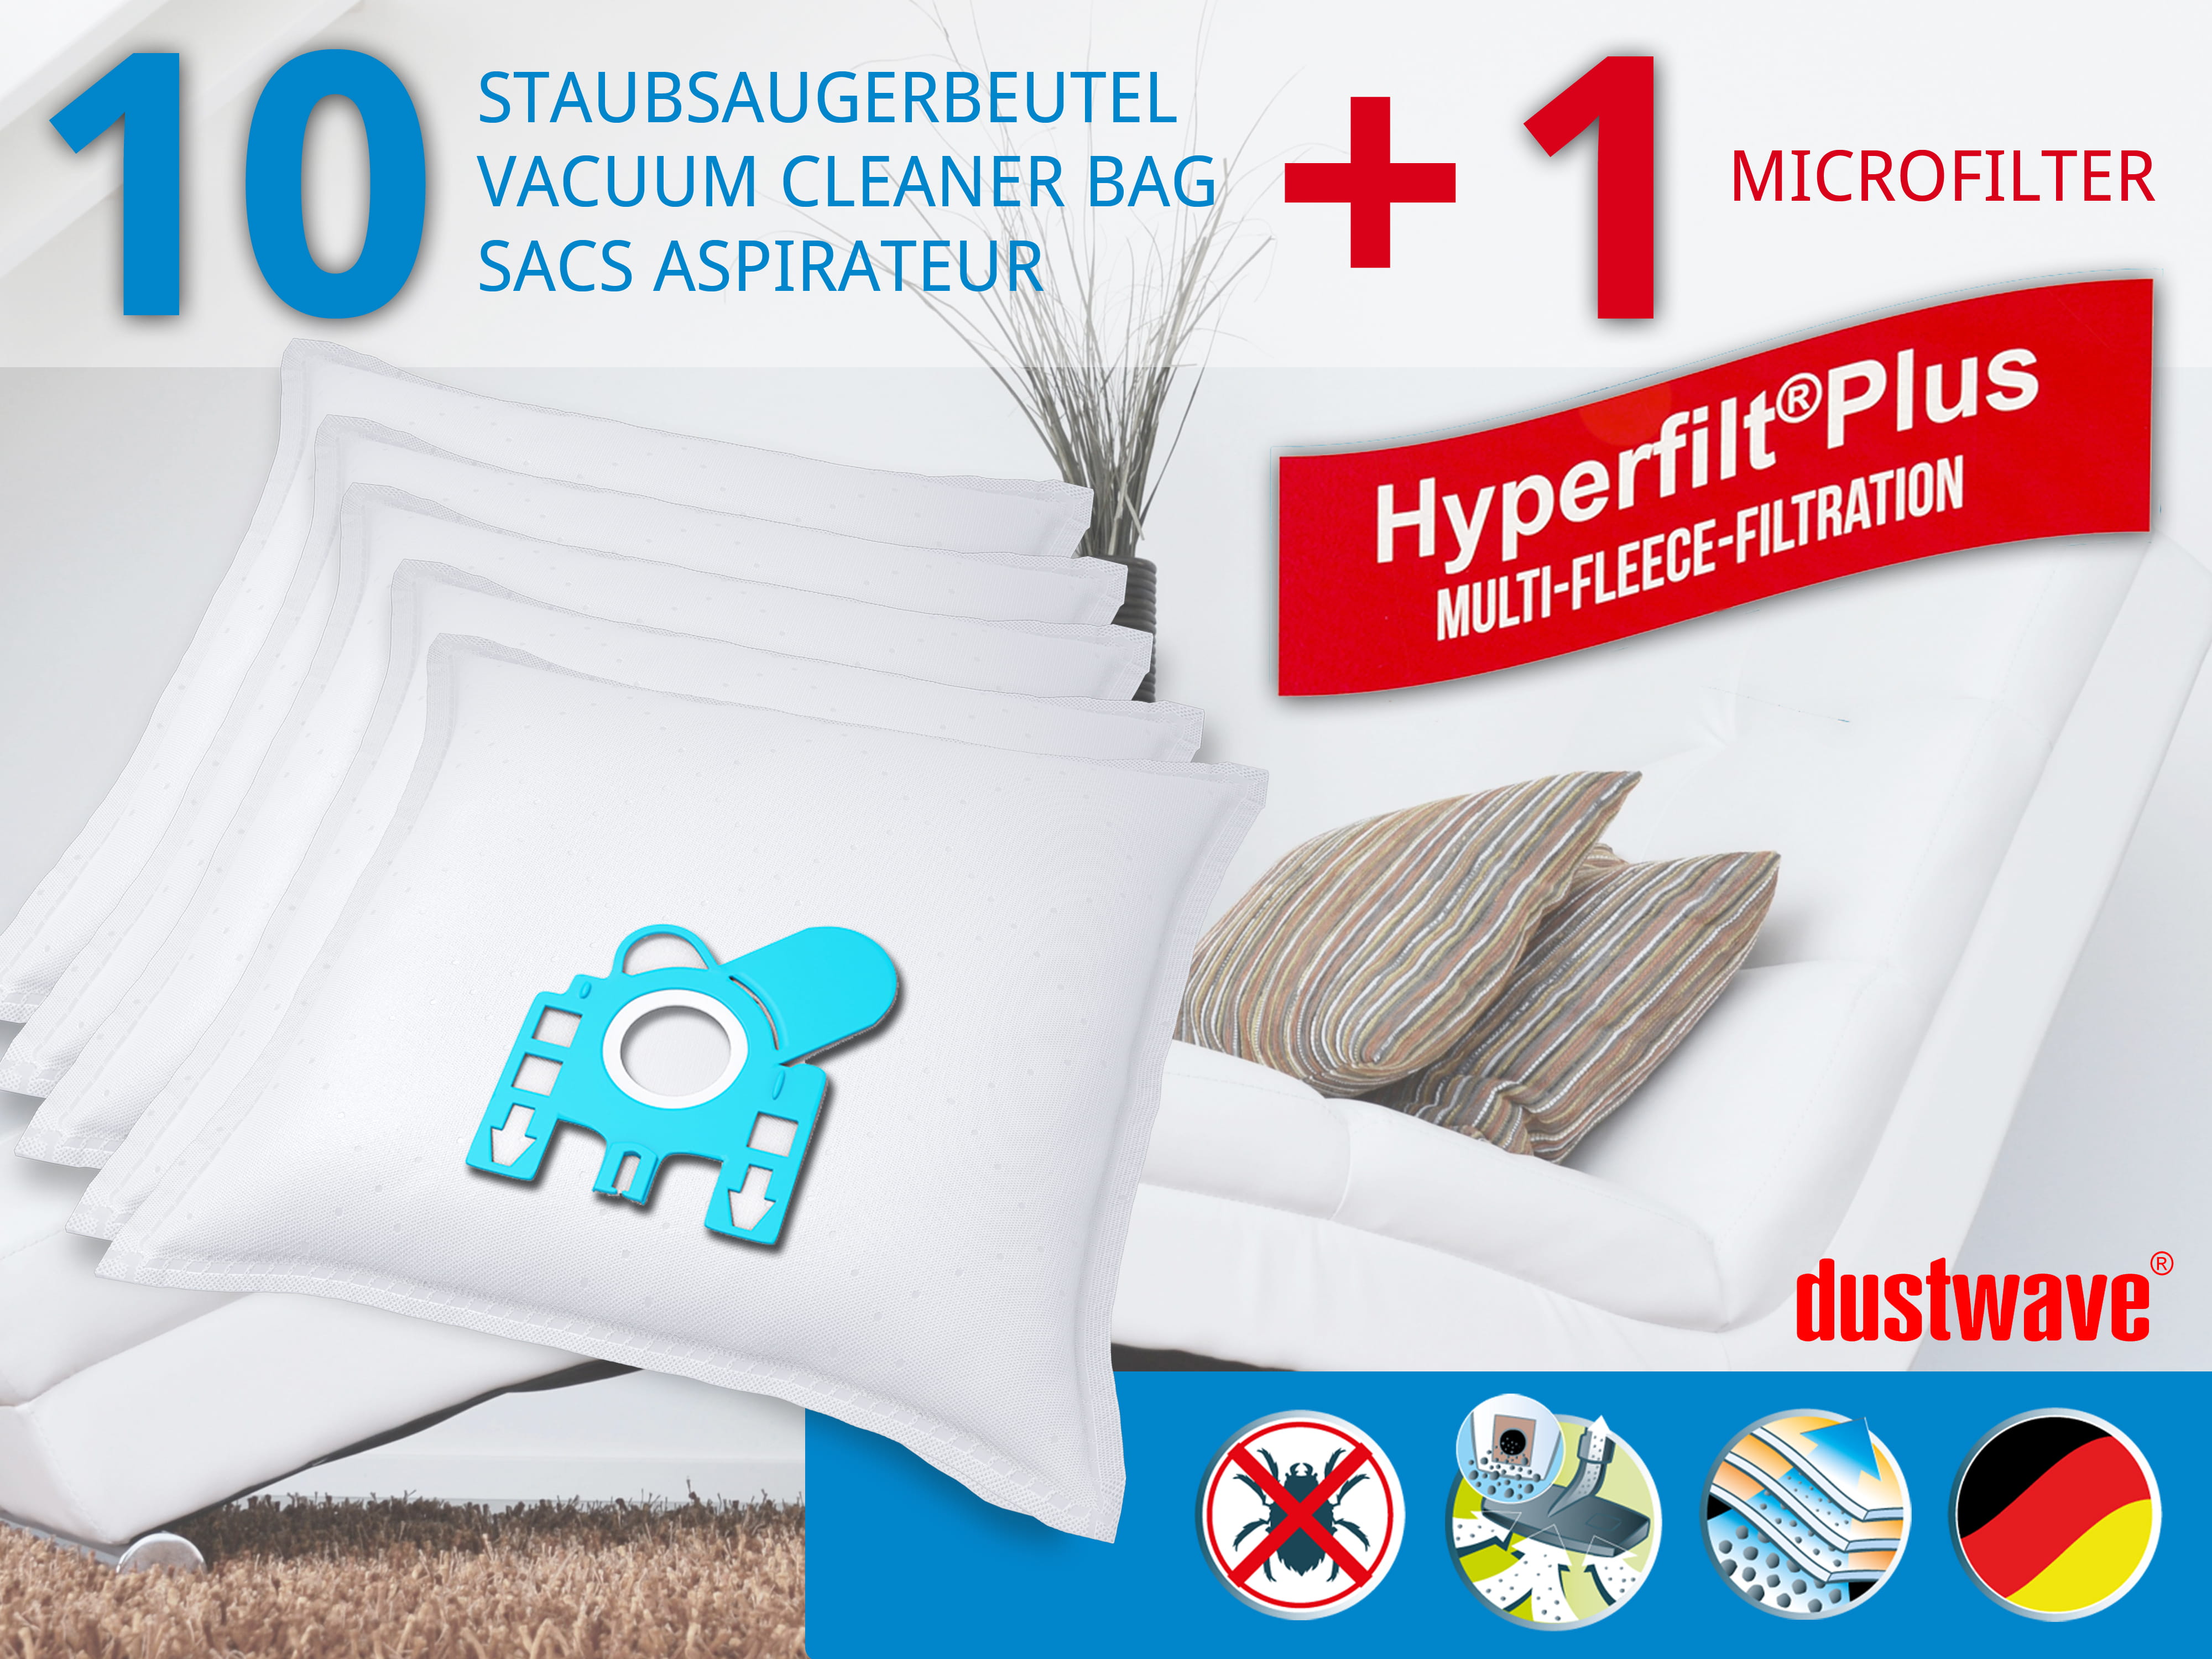 Dustwave® 10 Staubsaugerbeutel für Hoover TFB2223 017 FreeMotion - hocheffizient, mehrlagiges Mikrovlies mit Hygieneverschluss - Made in Germany